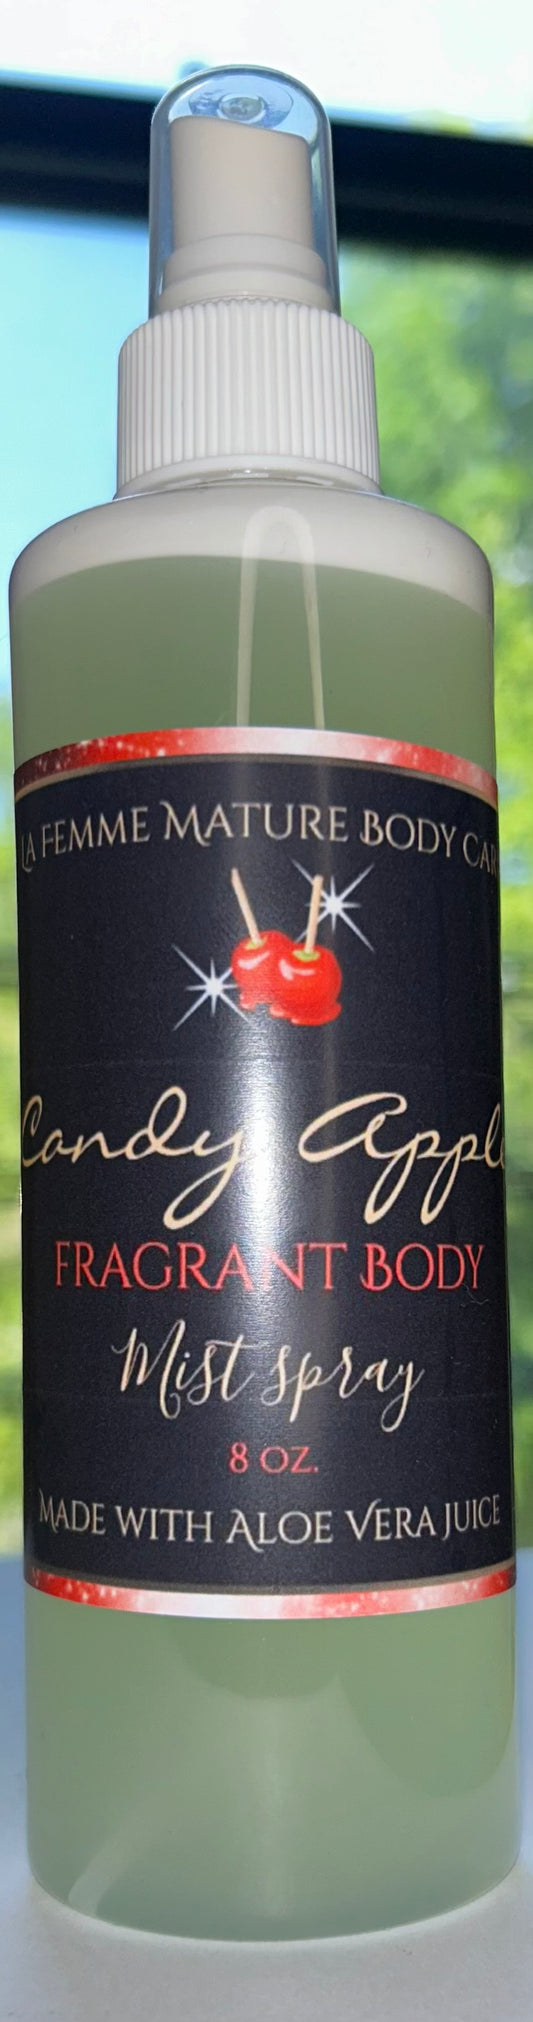 Candy Apple Fragrant Body Mist Spray